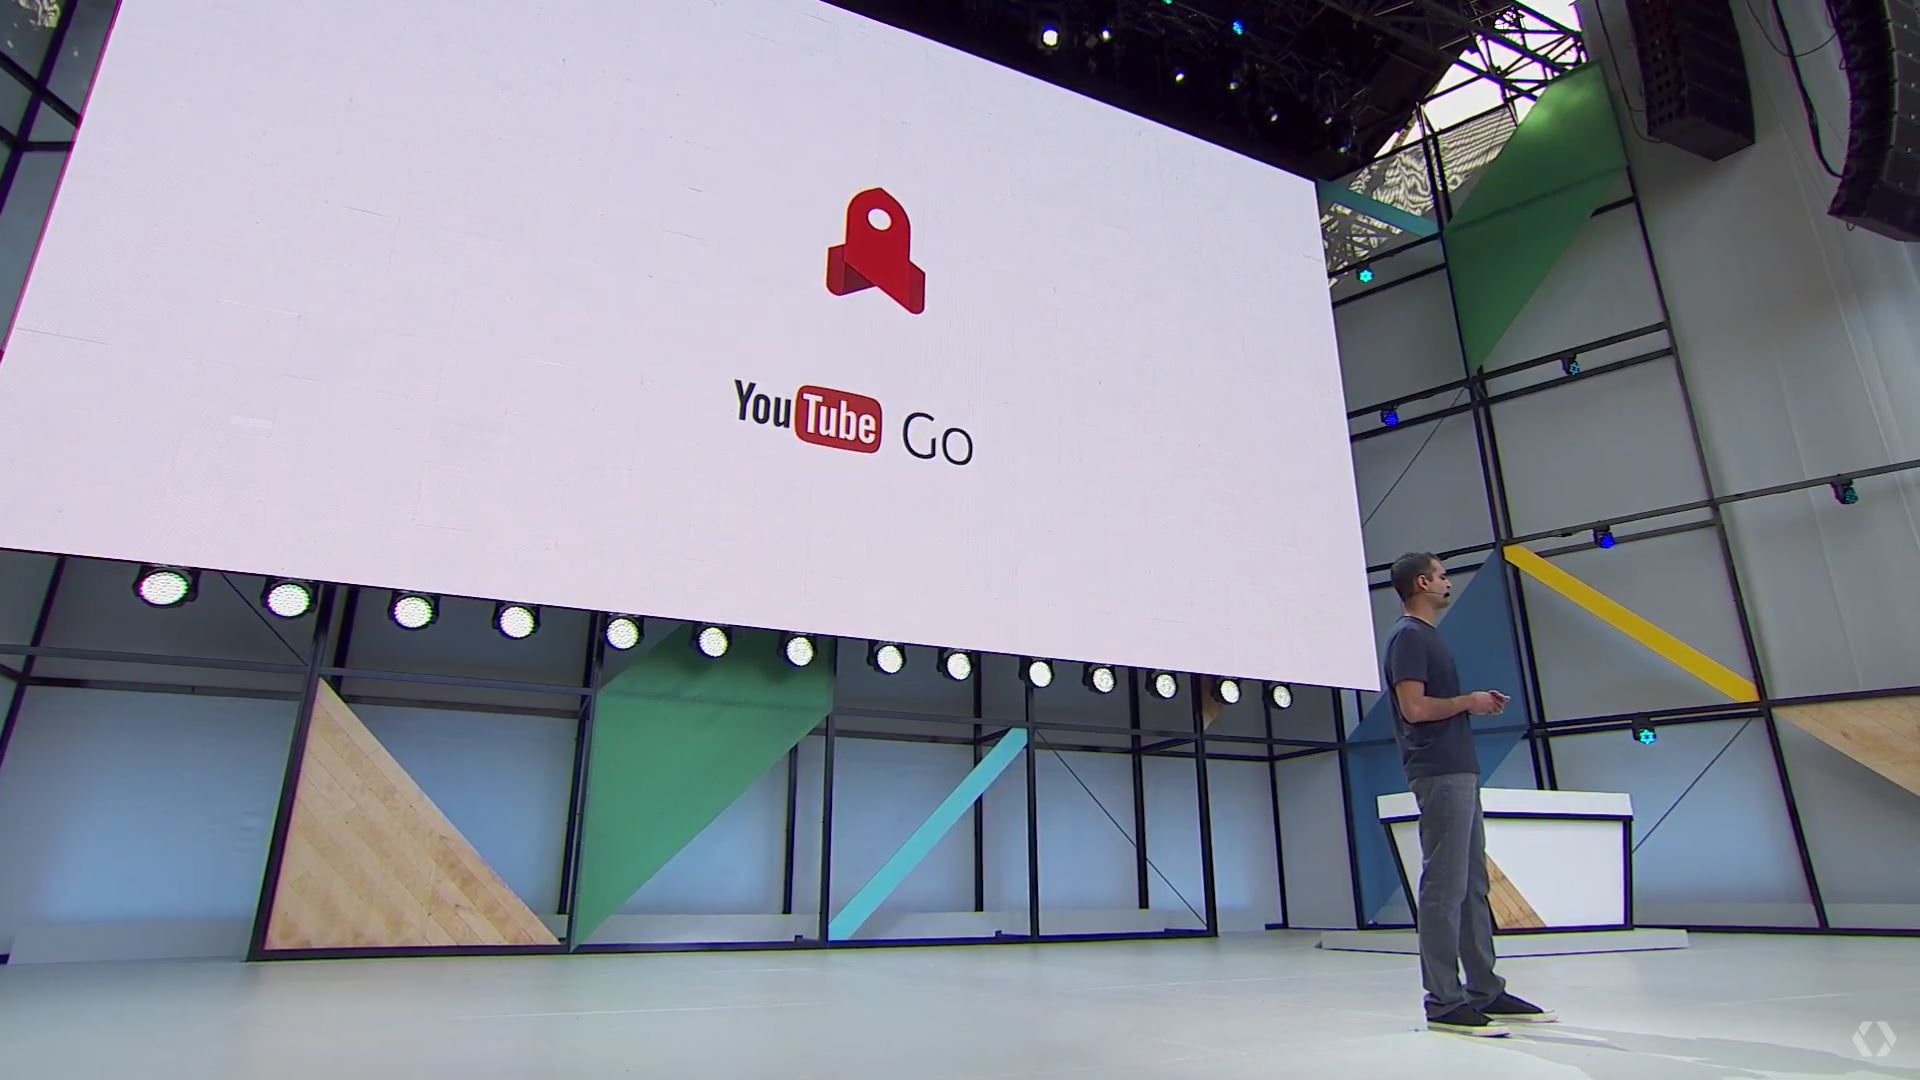 The YouTube Go logo at Google I/O 2017.